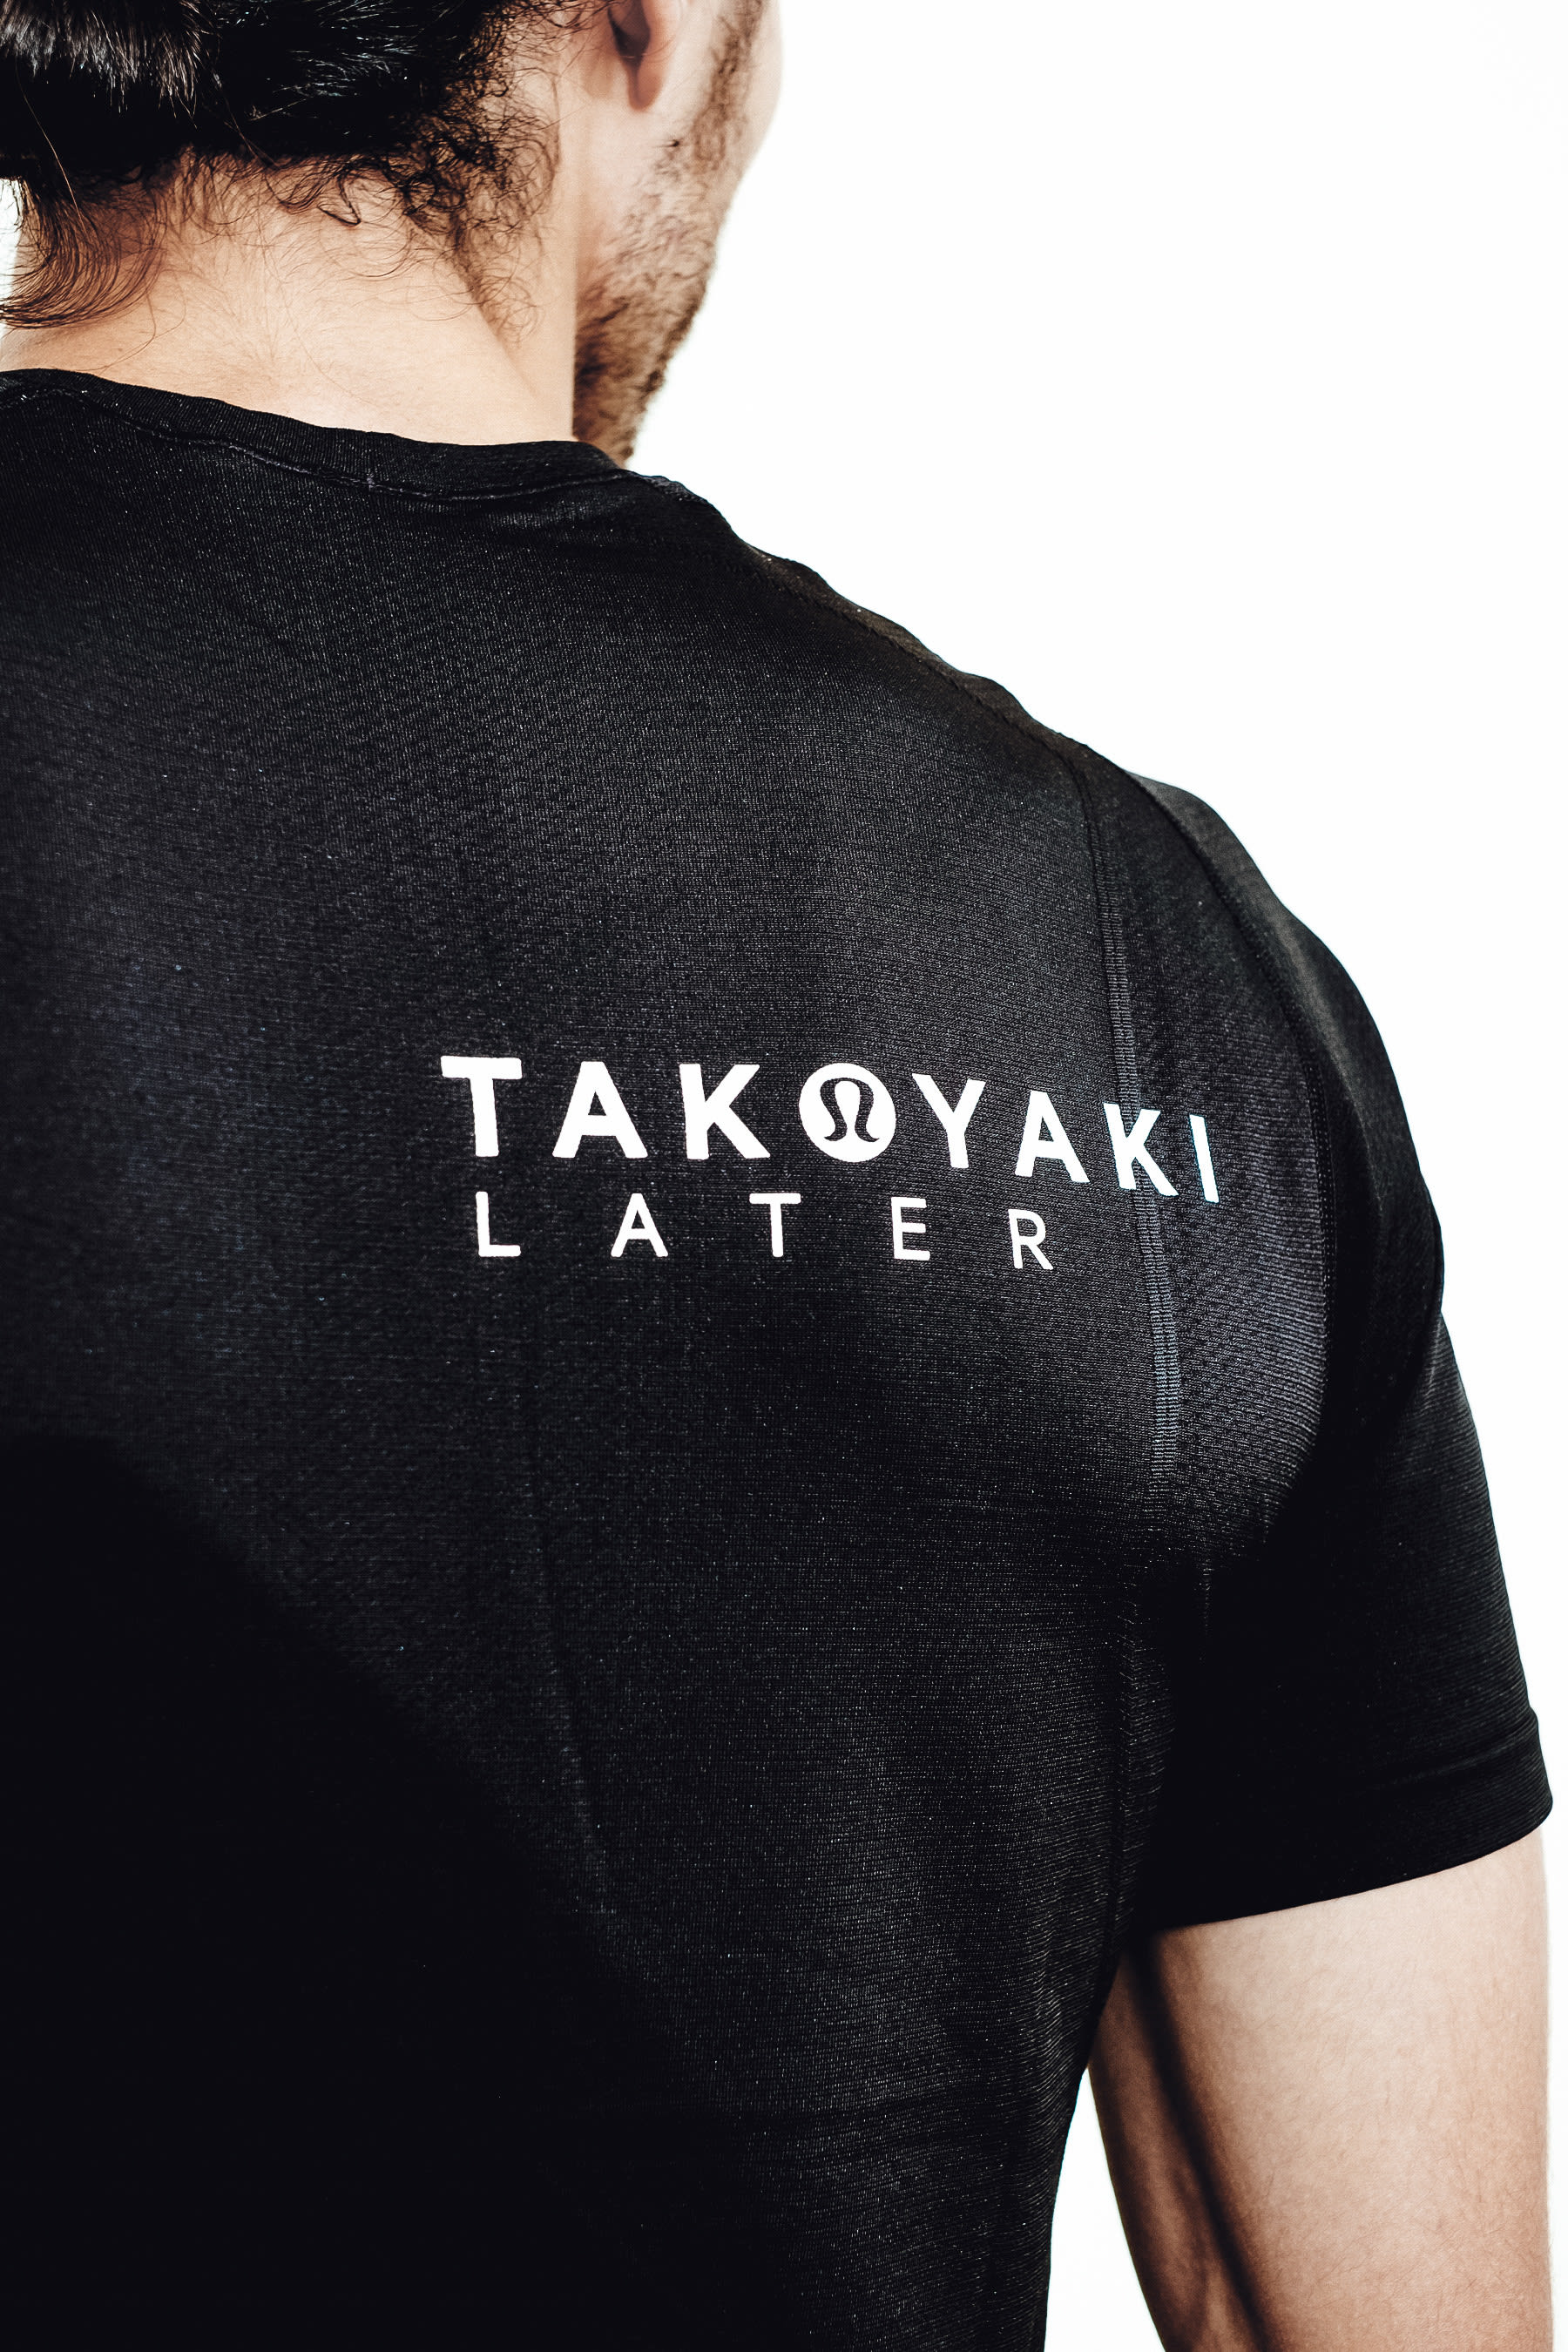 ルルレモン日本最大の店舗が大阪に、限定「TAKOYAKI Tシャツ」の販売も